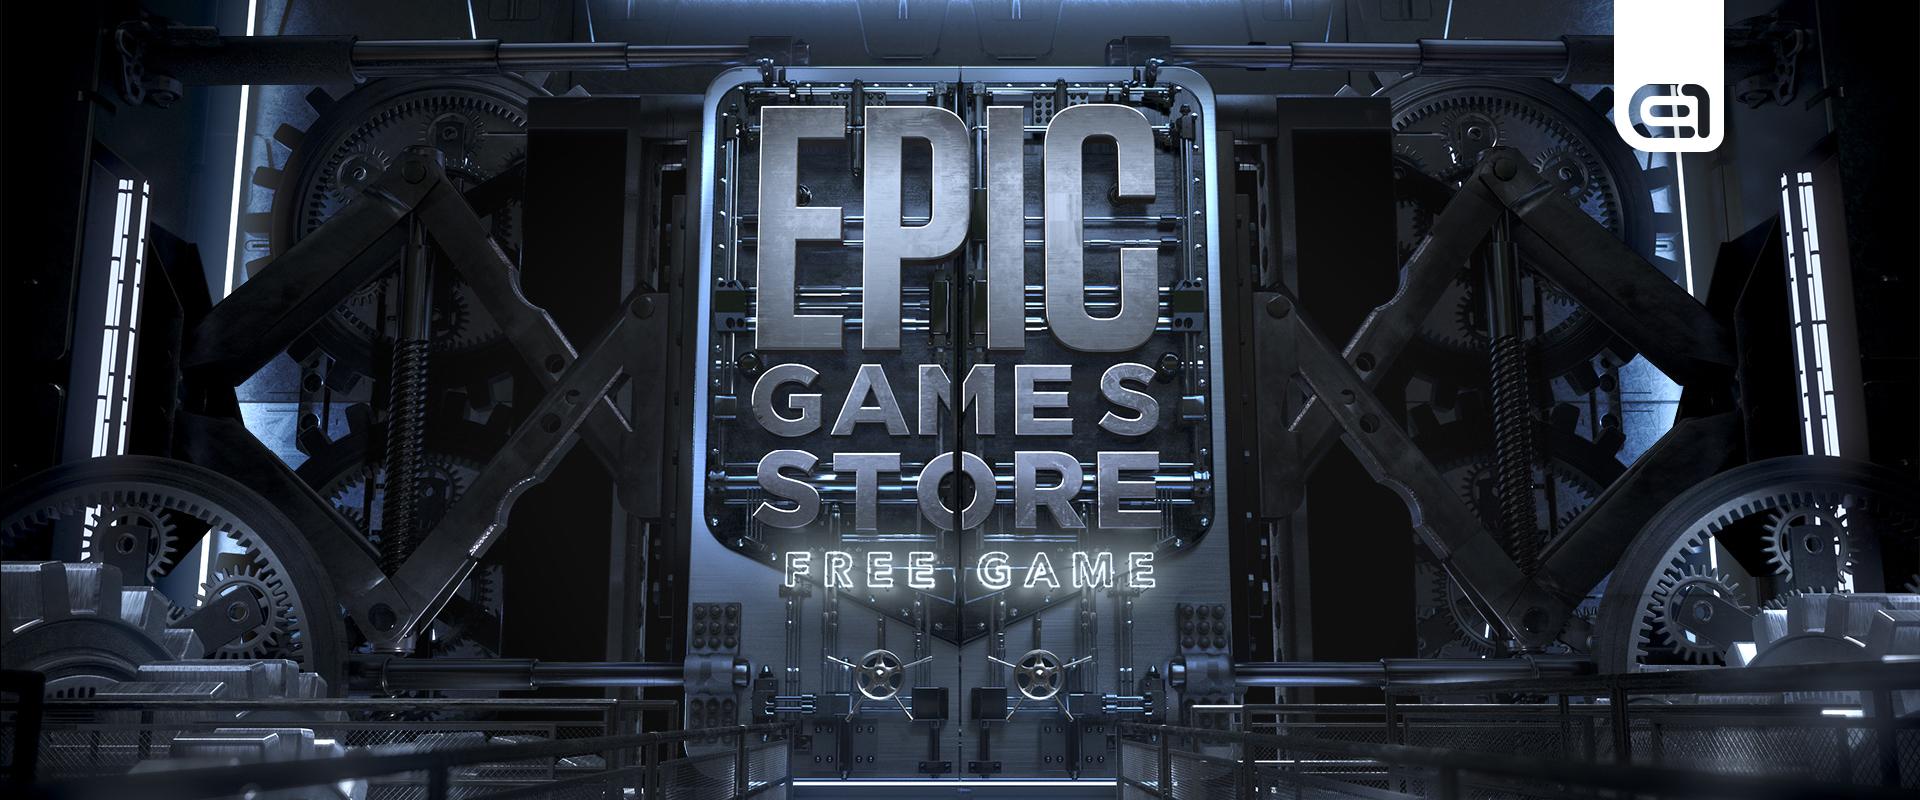 A jövő heti ingyenes játékával valami nagy dobásra készülhet az Epic Games